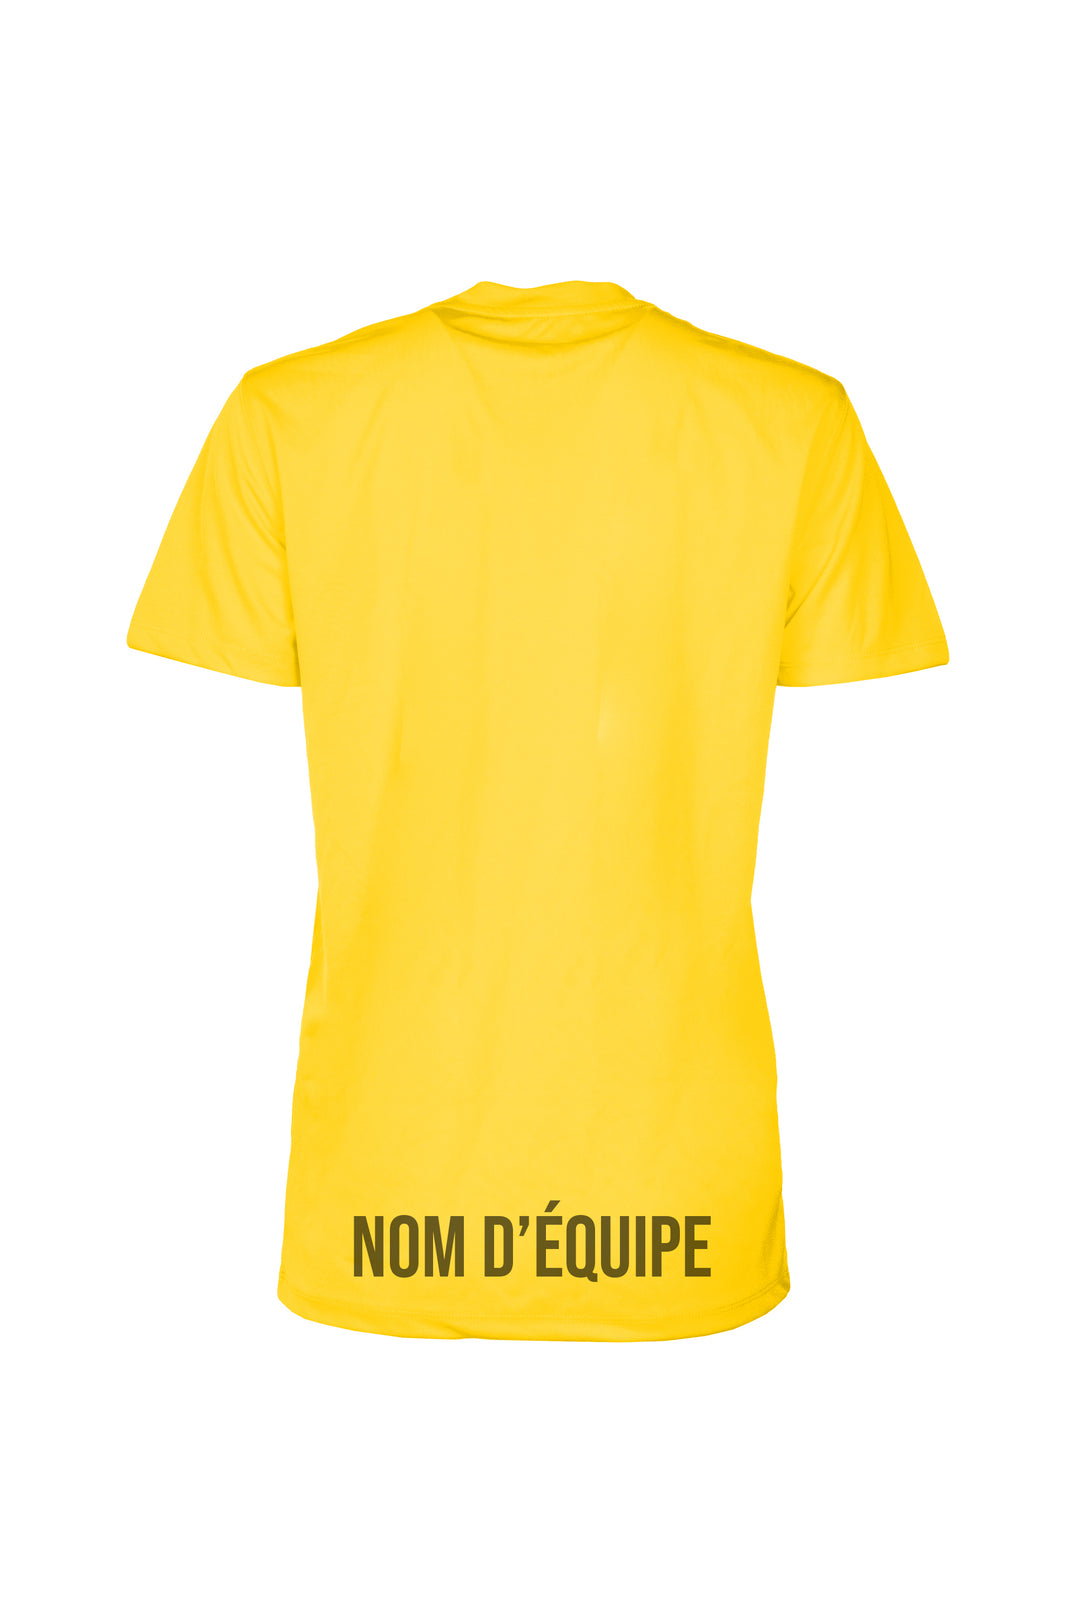 T-shirts sportif - 24h Tremblant avec nom d'équipe personnalisable [Jaune]